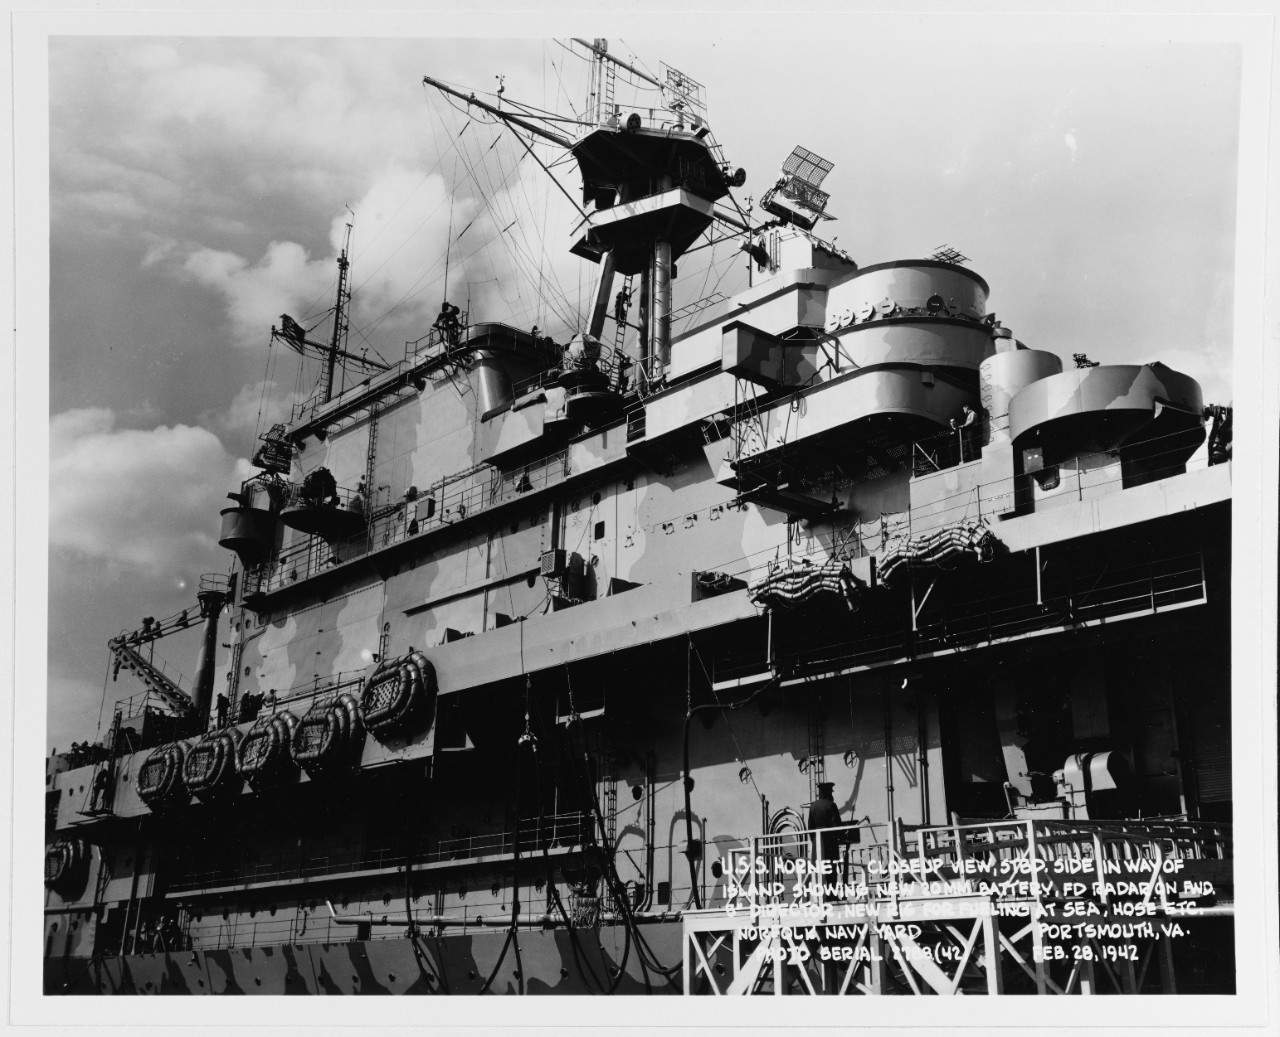 USS HORNET (CV-8)